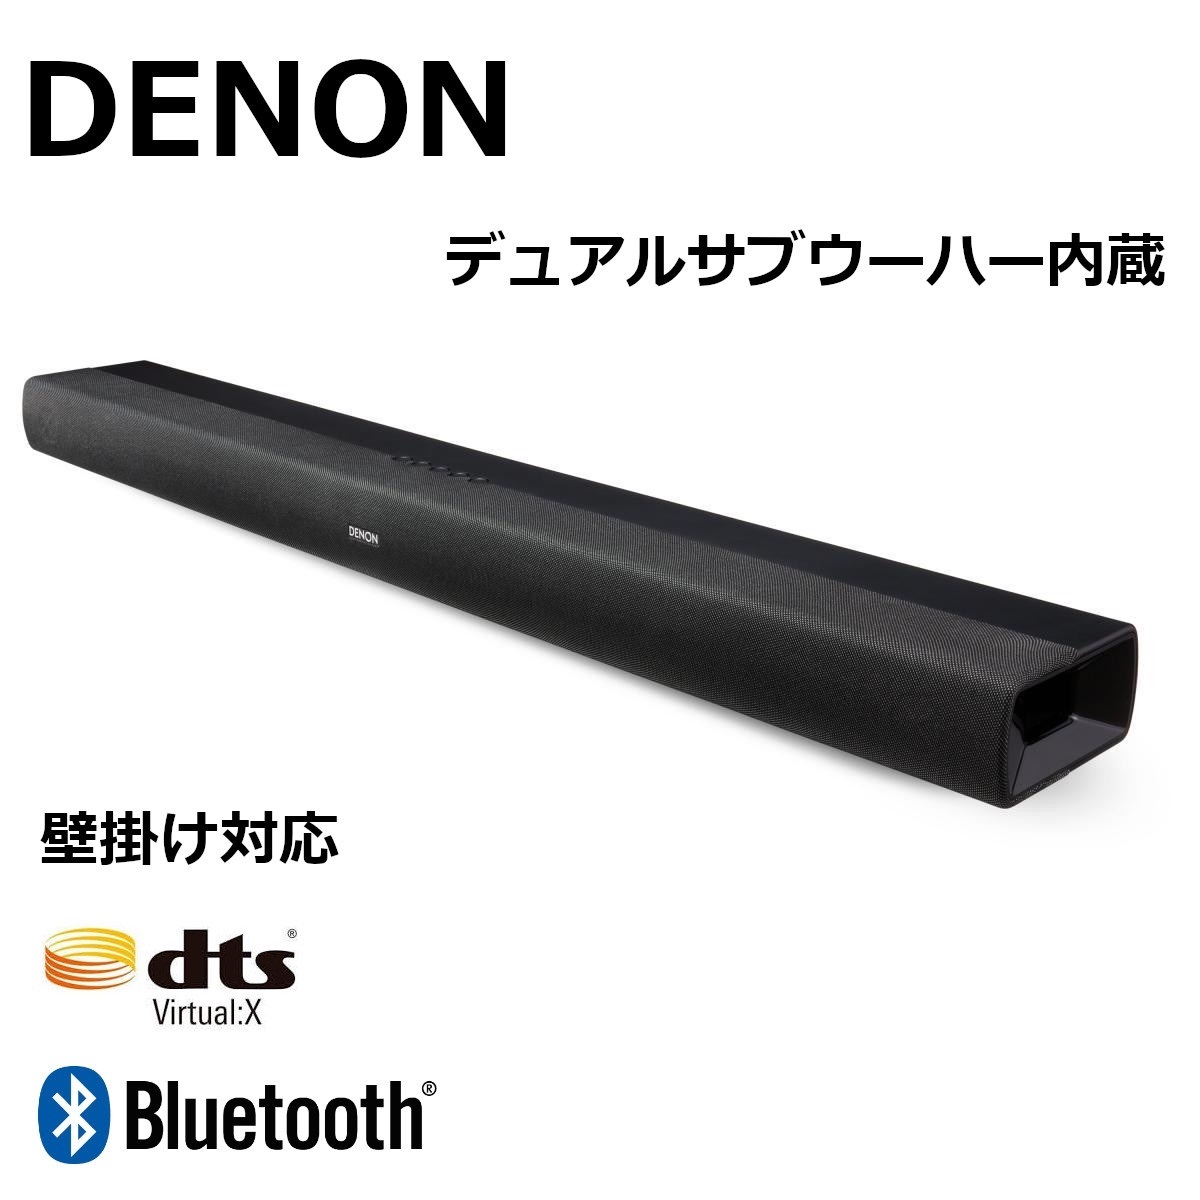 デノン Denon サブウーハー内蔵 サウンドバー DHT-C200 DTS Virtual X Bluetooth対応 ブラック テレビ スピーカー 壁かけ_画像1